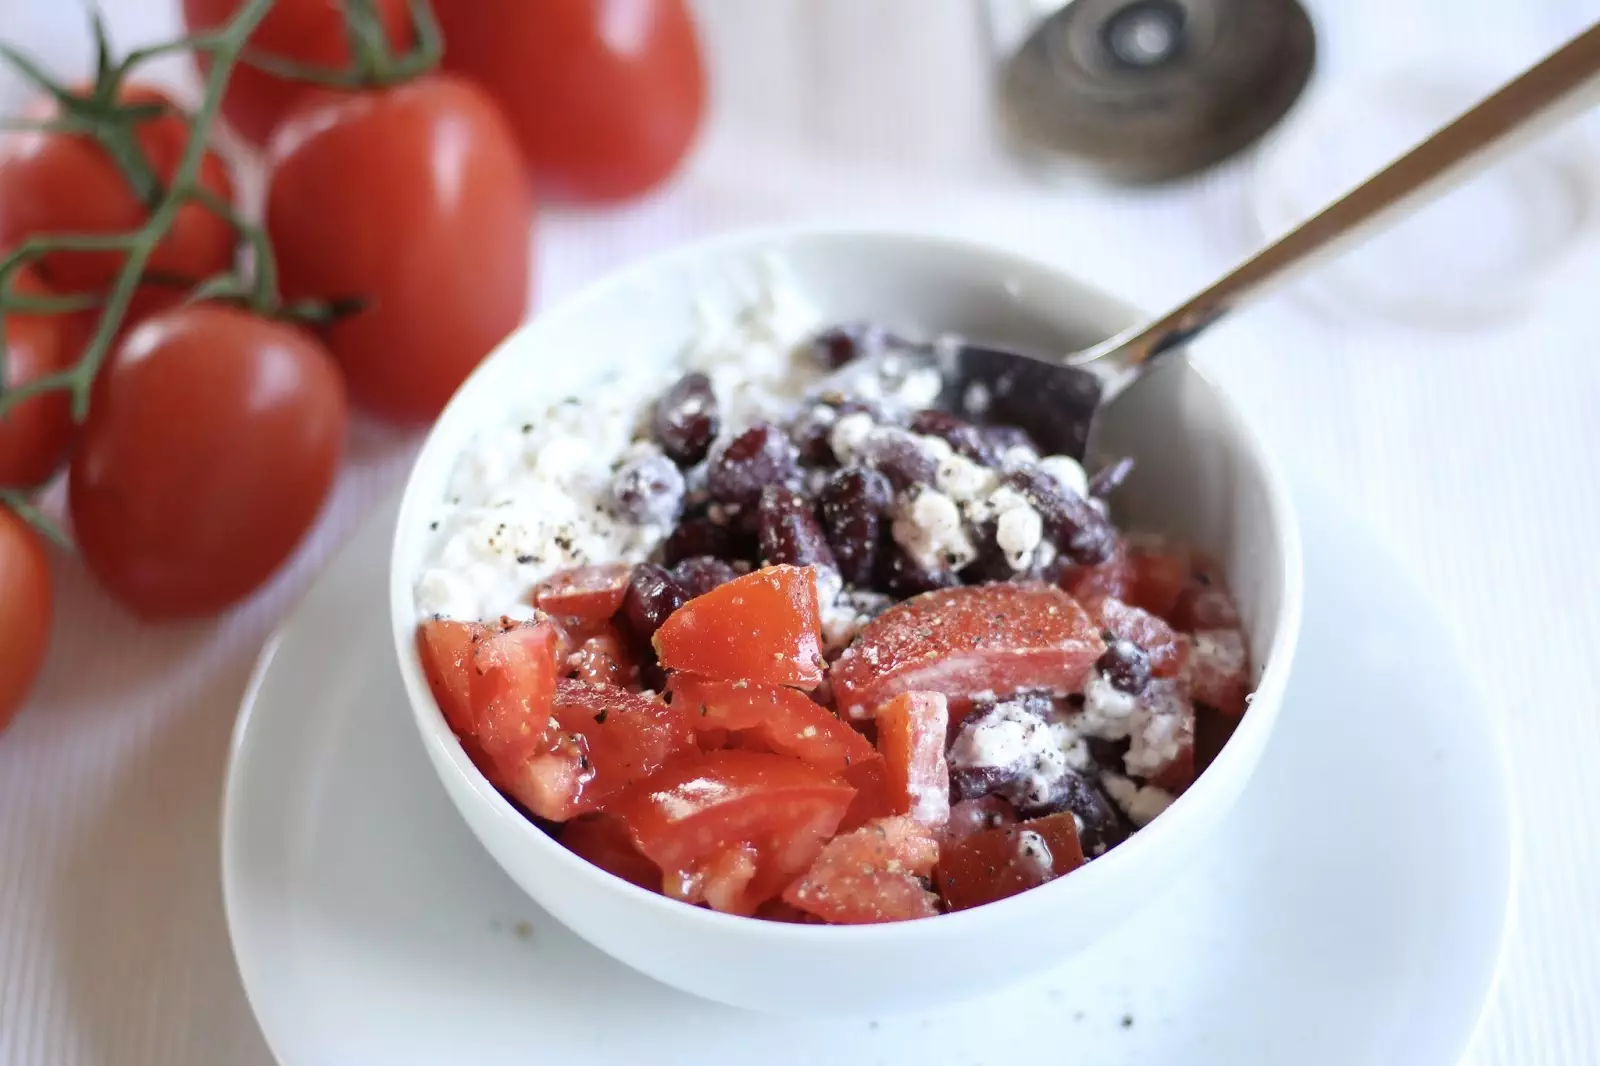 Schnelle Protein-Schale: Kidneybohnen, Tomaten, Hüttenkäse und etwas Pfeffer und Salz!